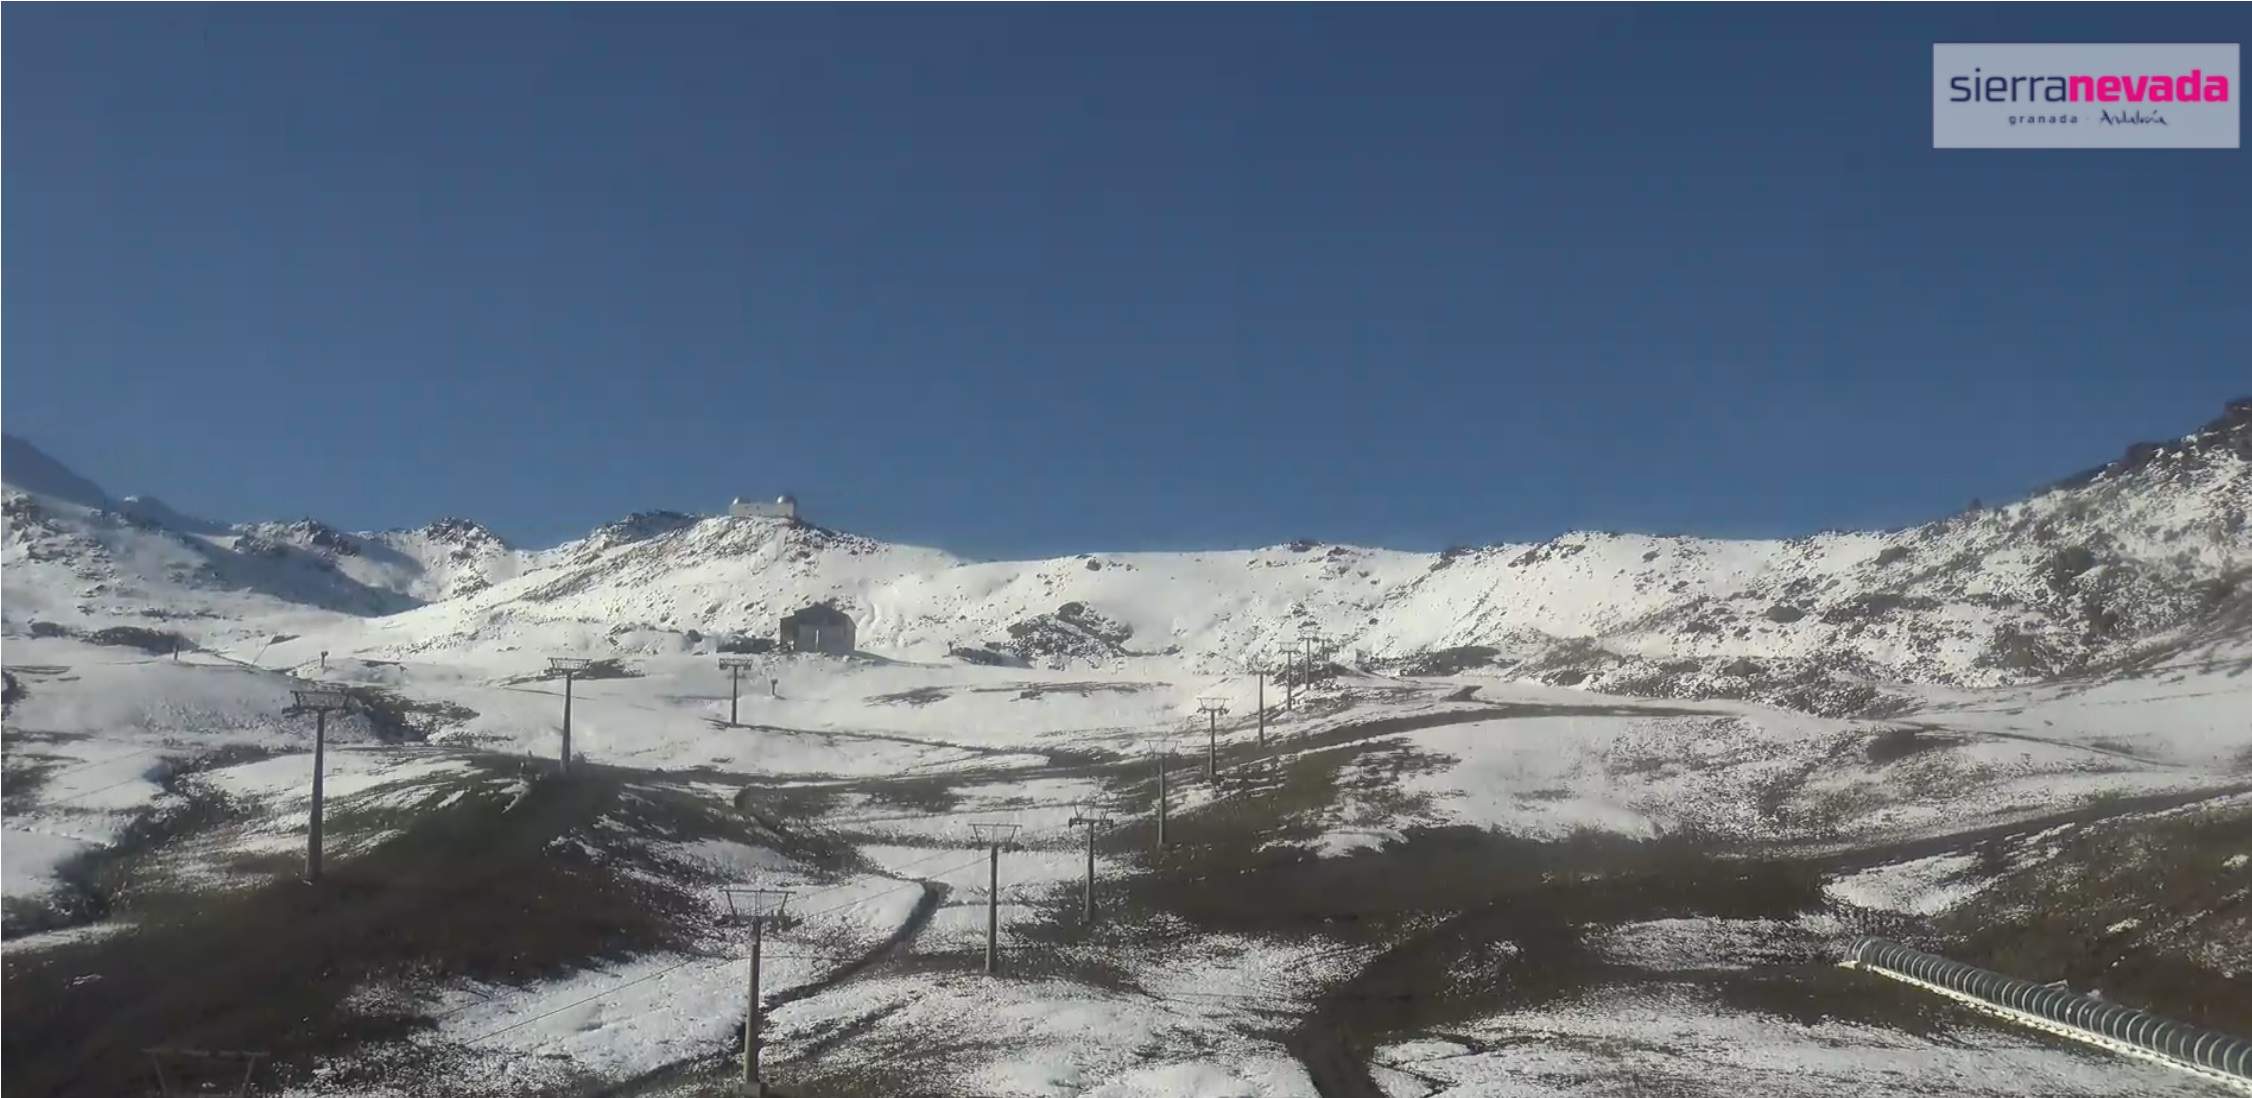 Onverwachte sneeuwval treft Sierra Nevada in Spanje, tart einde skiseizoen